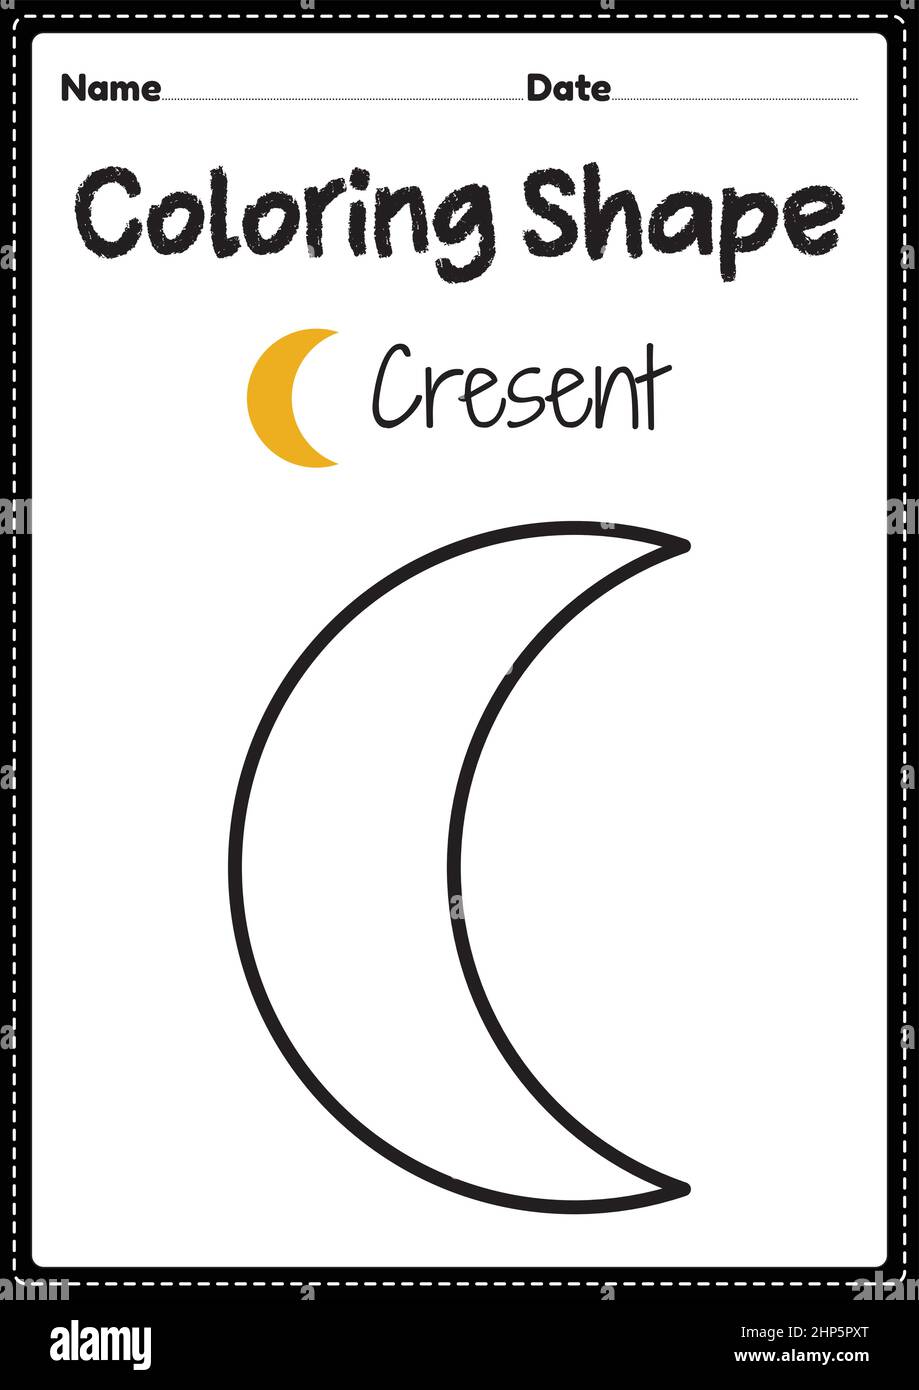 Crescent coloring hi